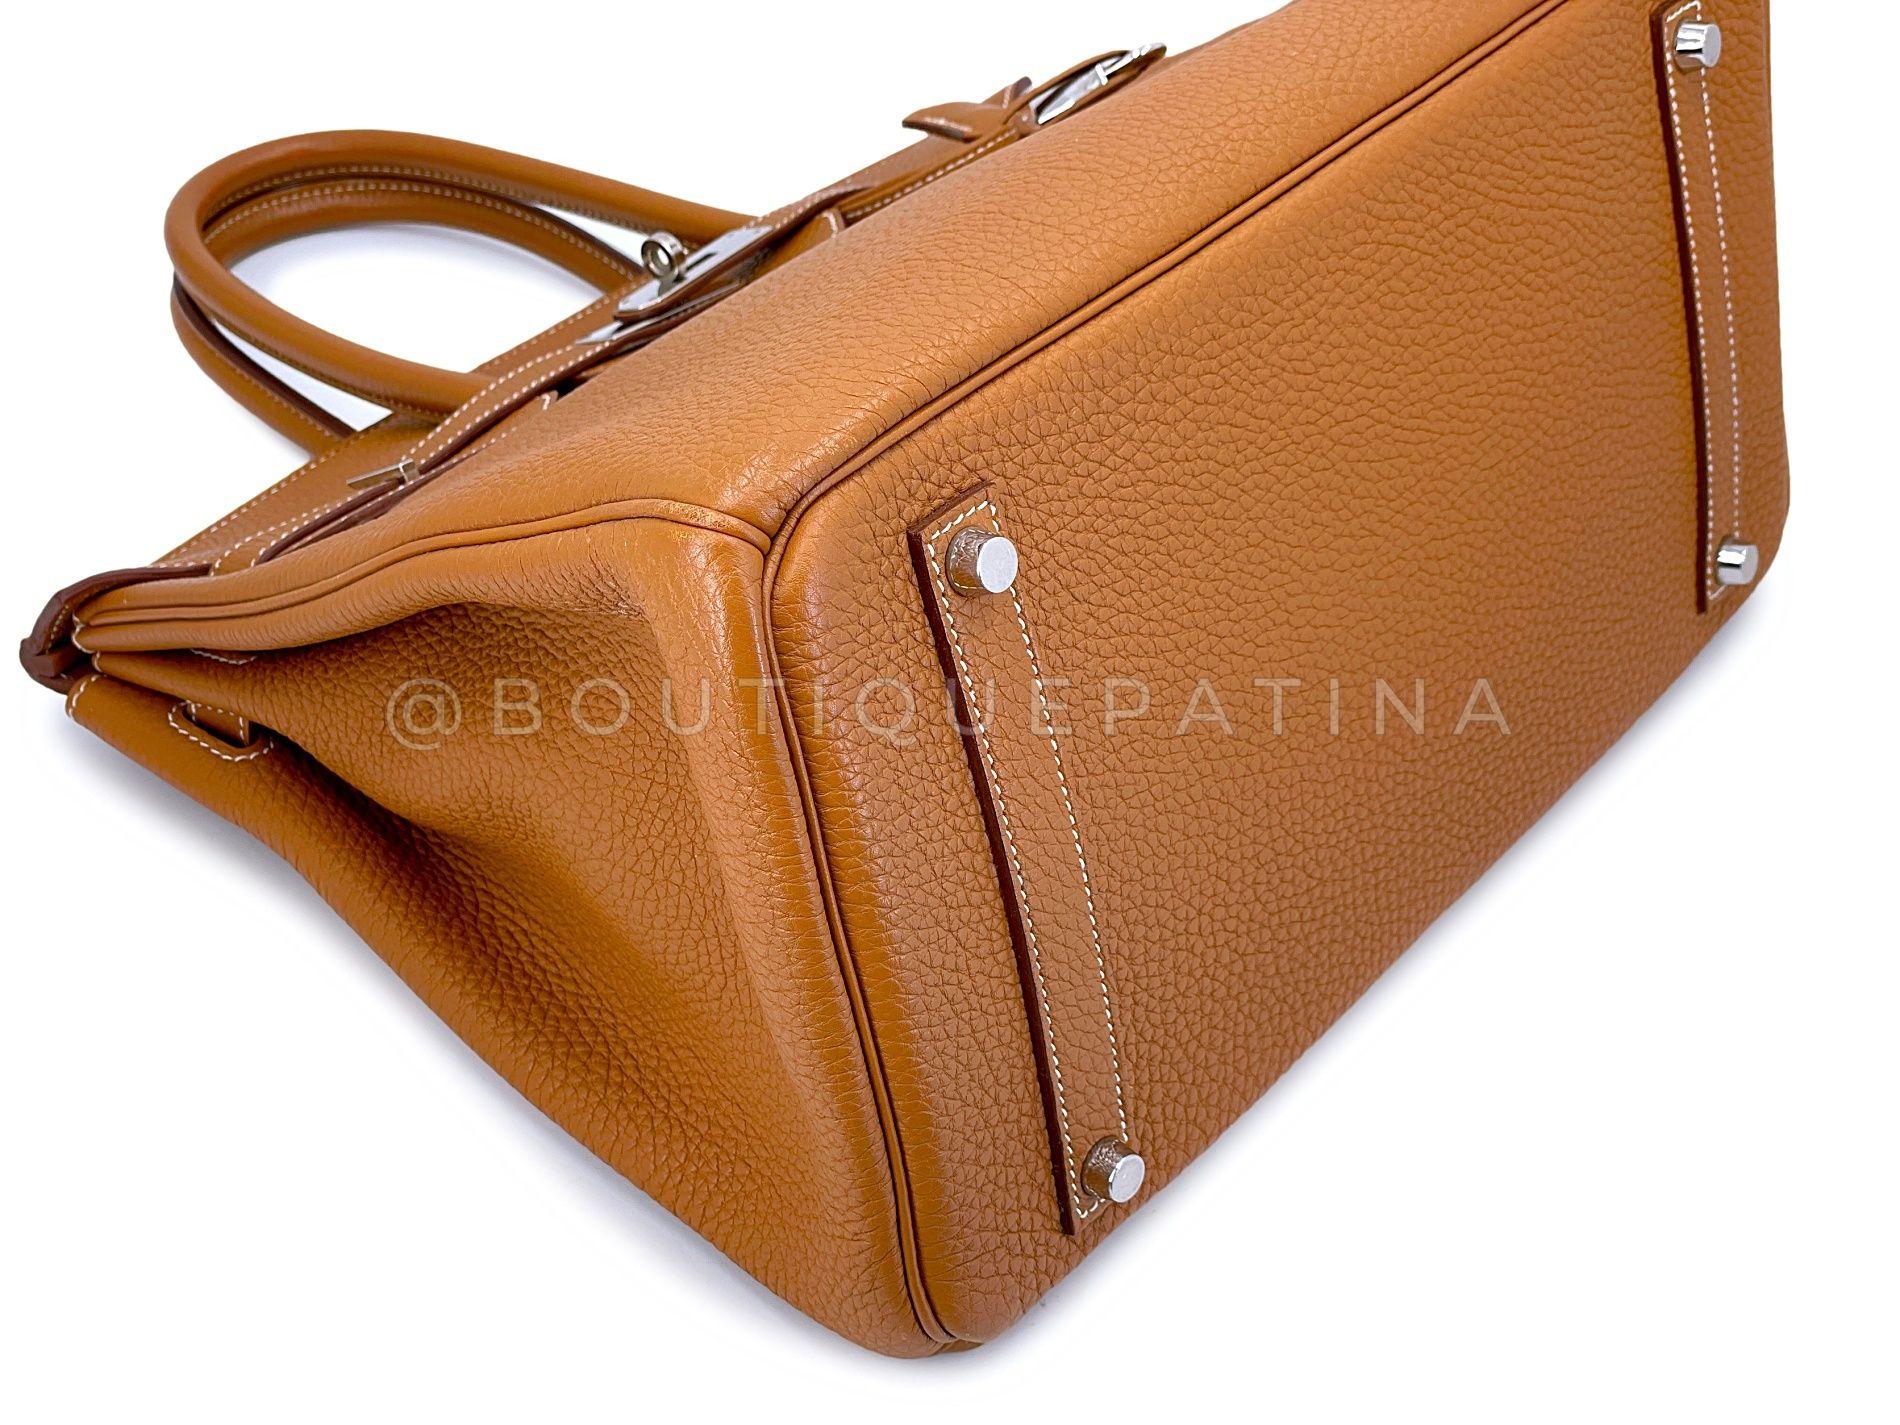 Hermès Gold Togo Birkin Tote Bag 35cm PHW Camel Brown 68060 For Sale 2